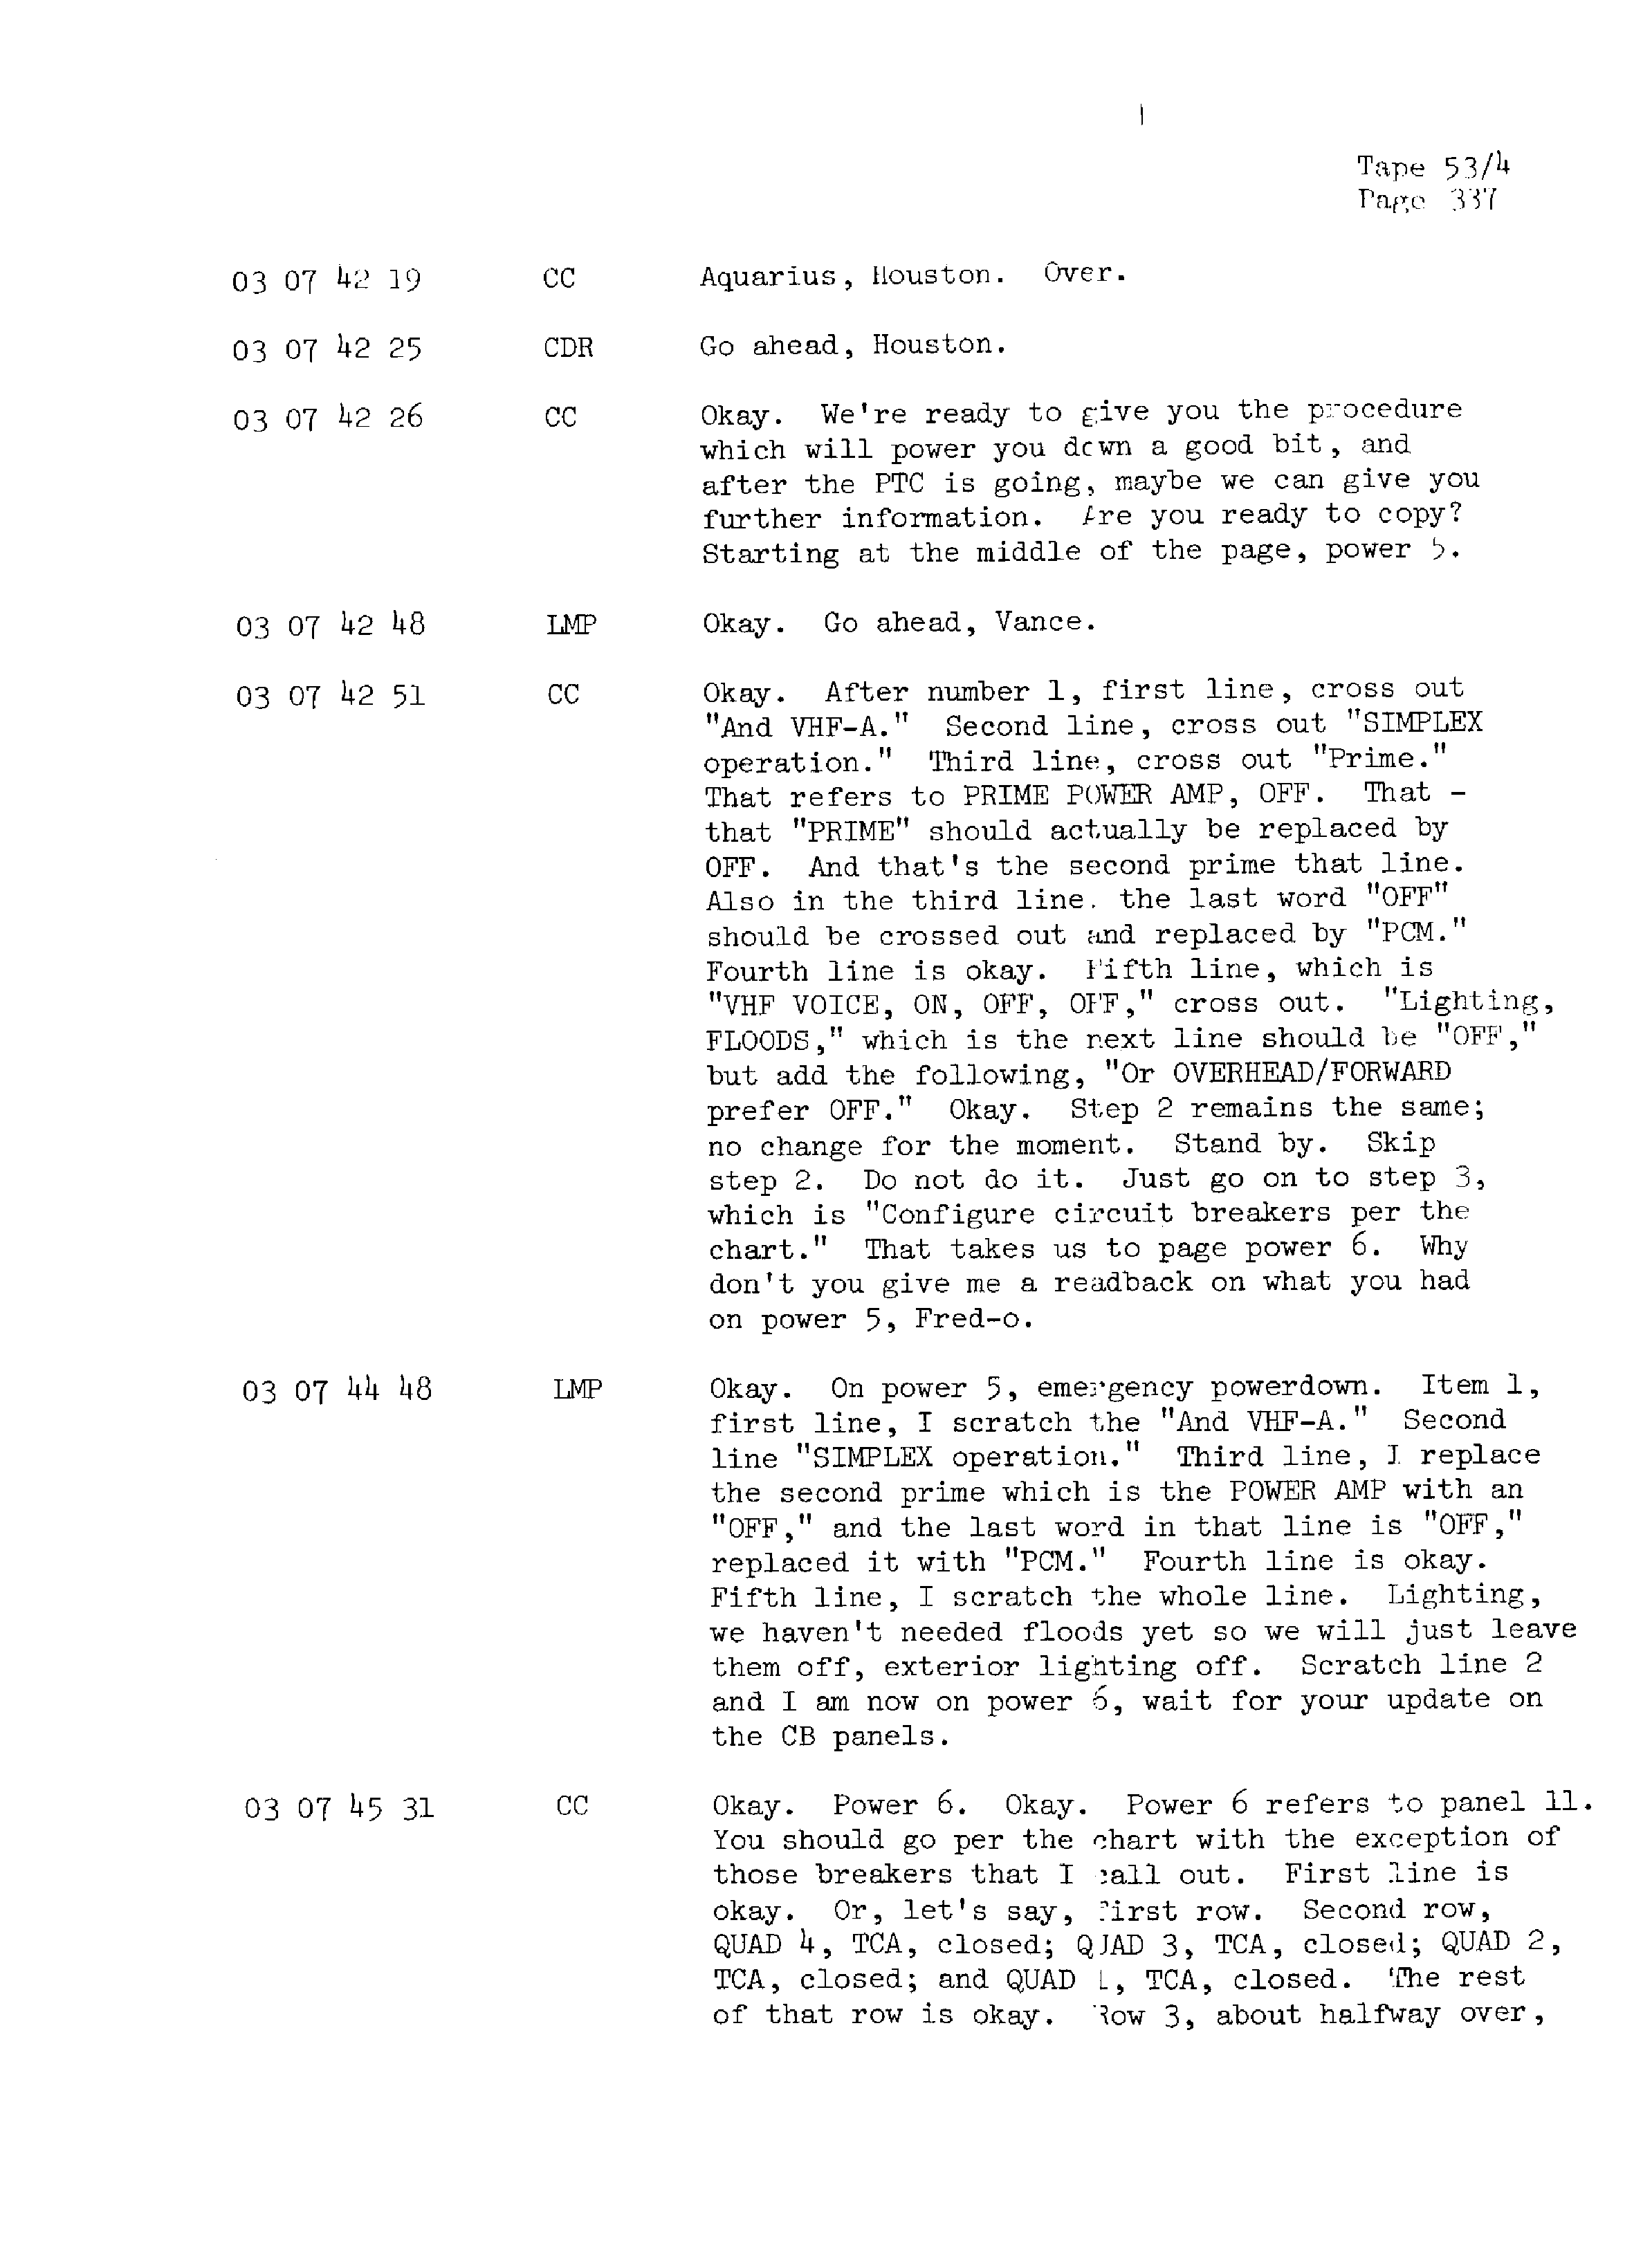 Page 344 of Apollo 13’s original transcript